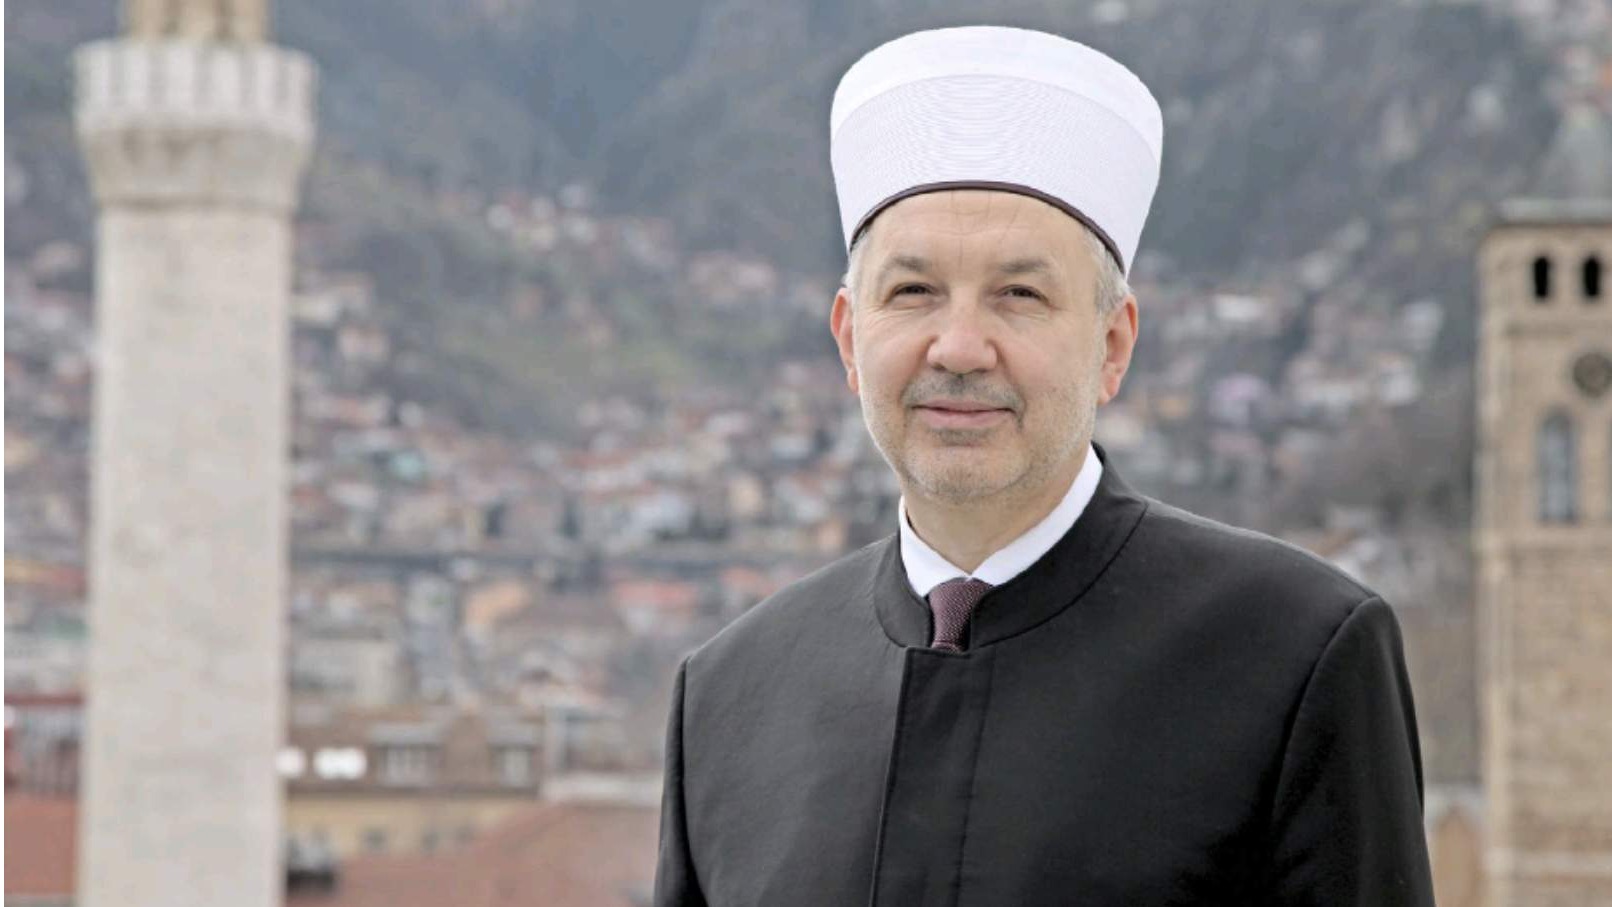 Muftija sarajevski prof. dr. Nedžad Grabus:  Islamska zajednica ima pravo na svoj stav